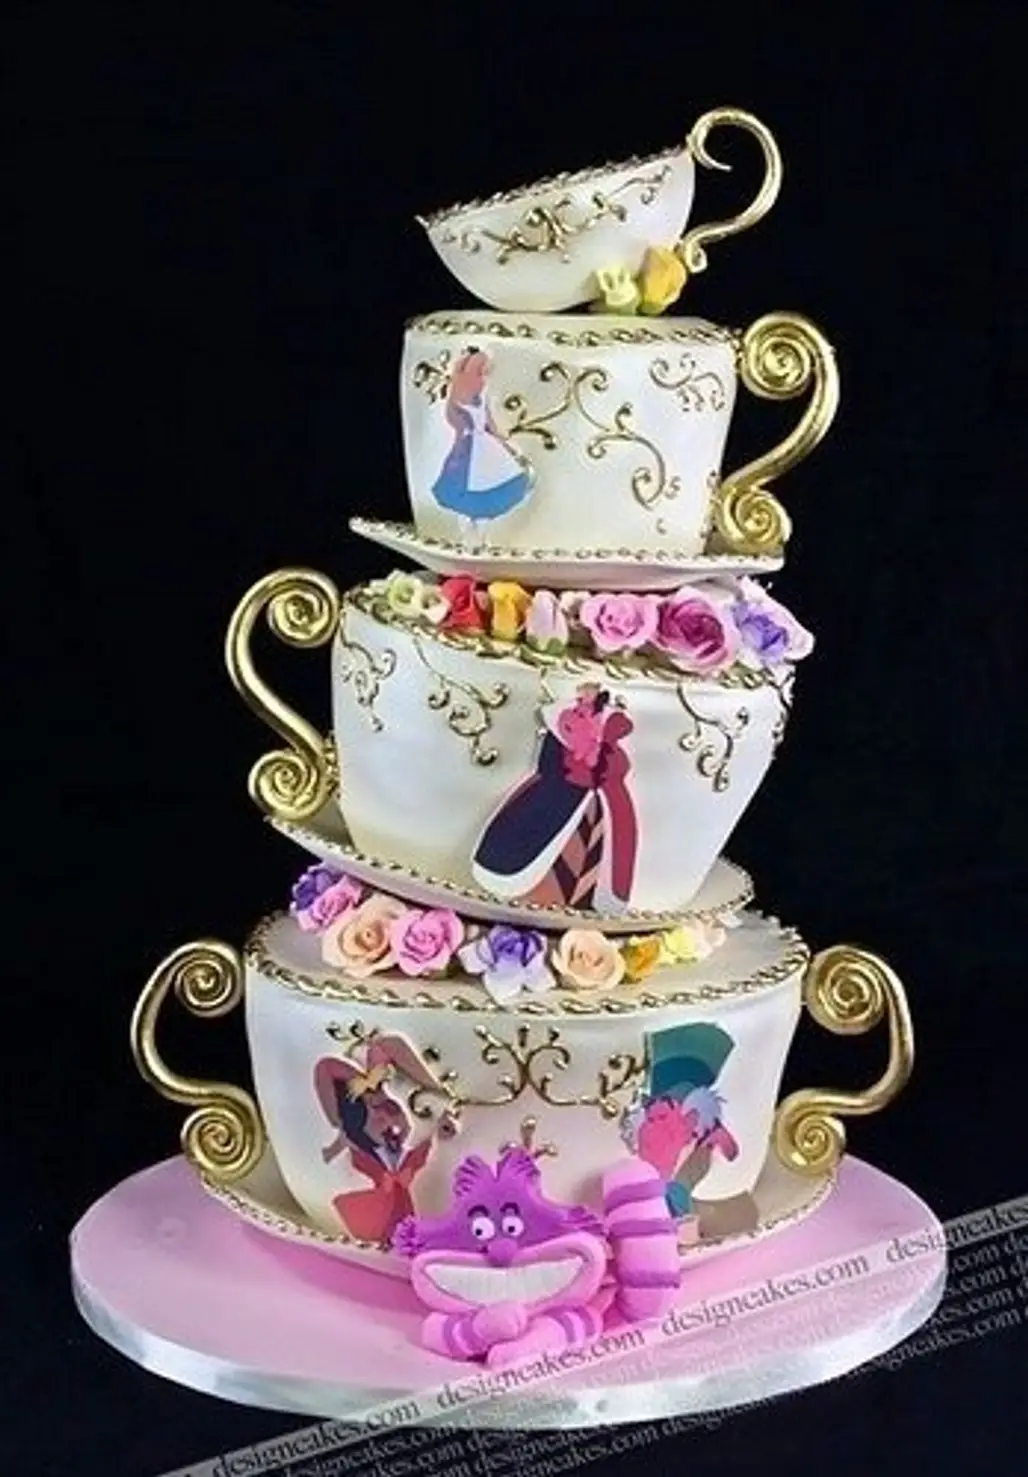 Disney-inspired Cake